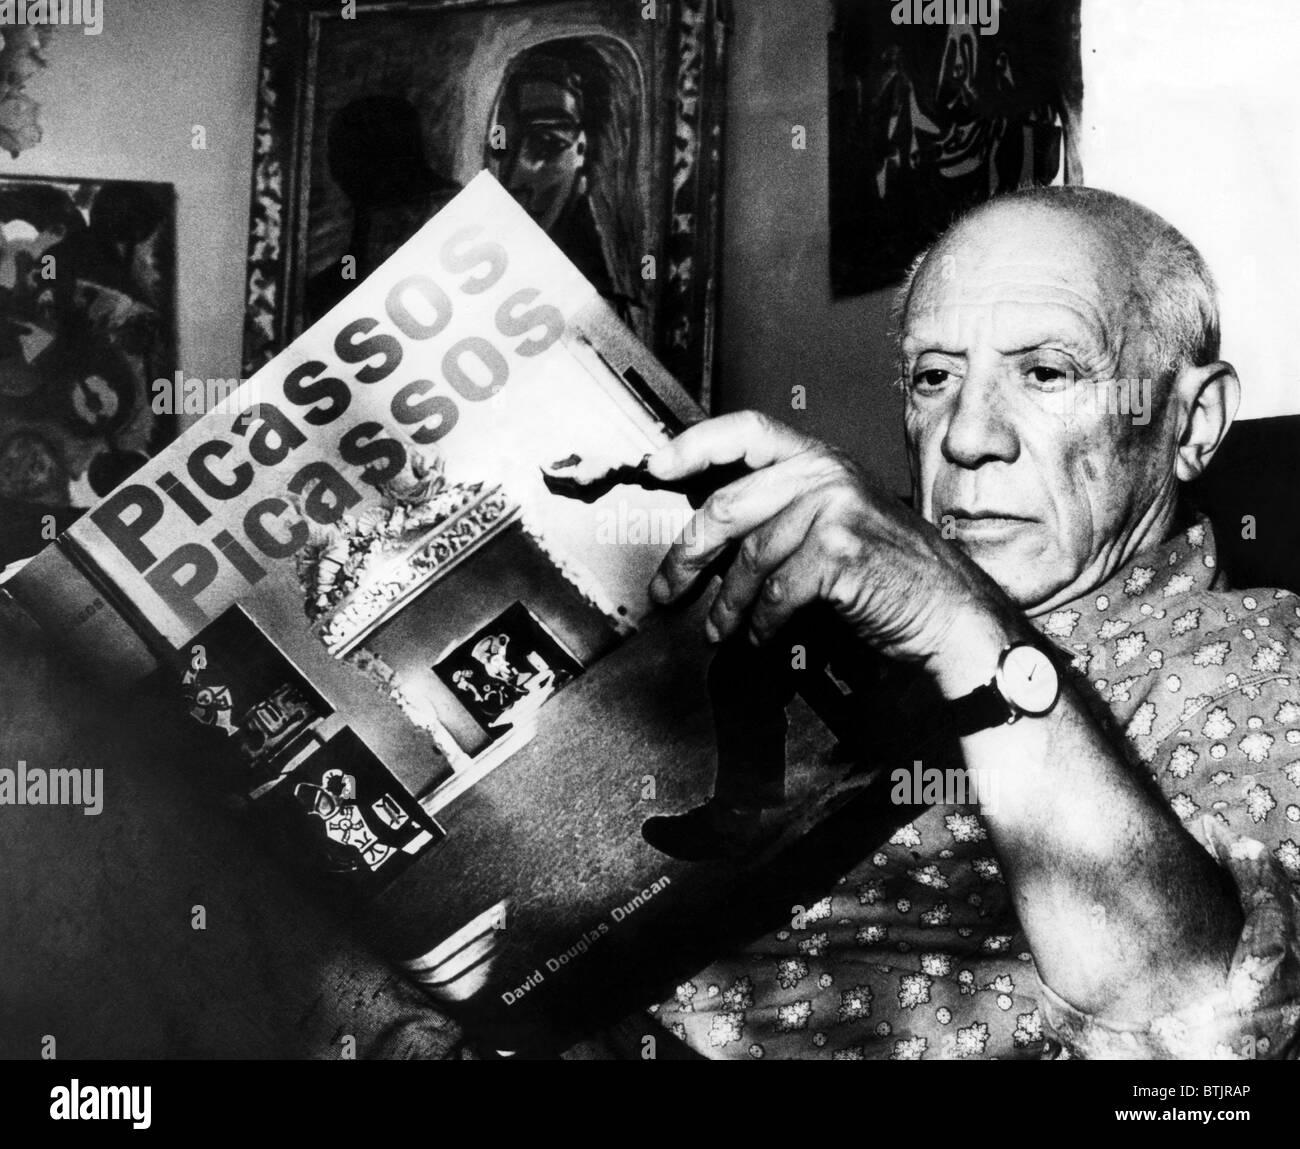 Pablo Picasso artiste fom lit son livre à son domicile sur la côte d'Azur. 10/19/60. Avec la permission de : Archives CSU/Everett Collection. Banque D'Images